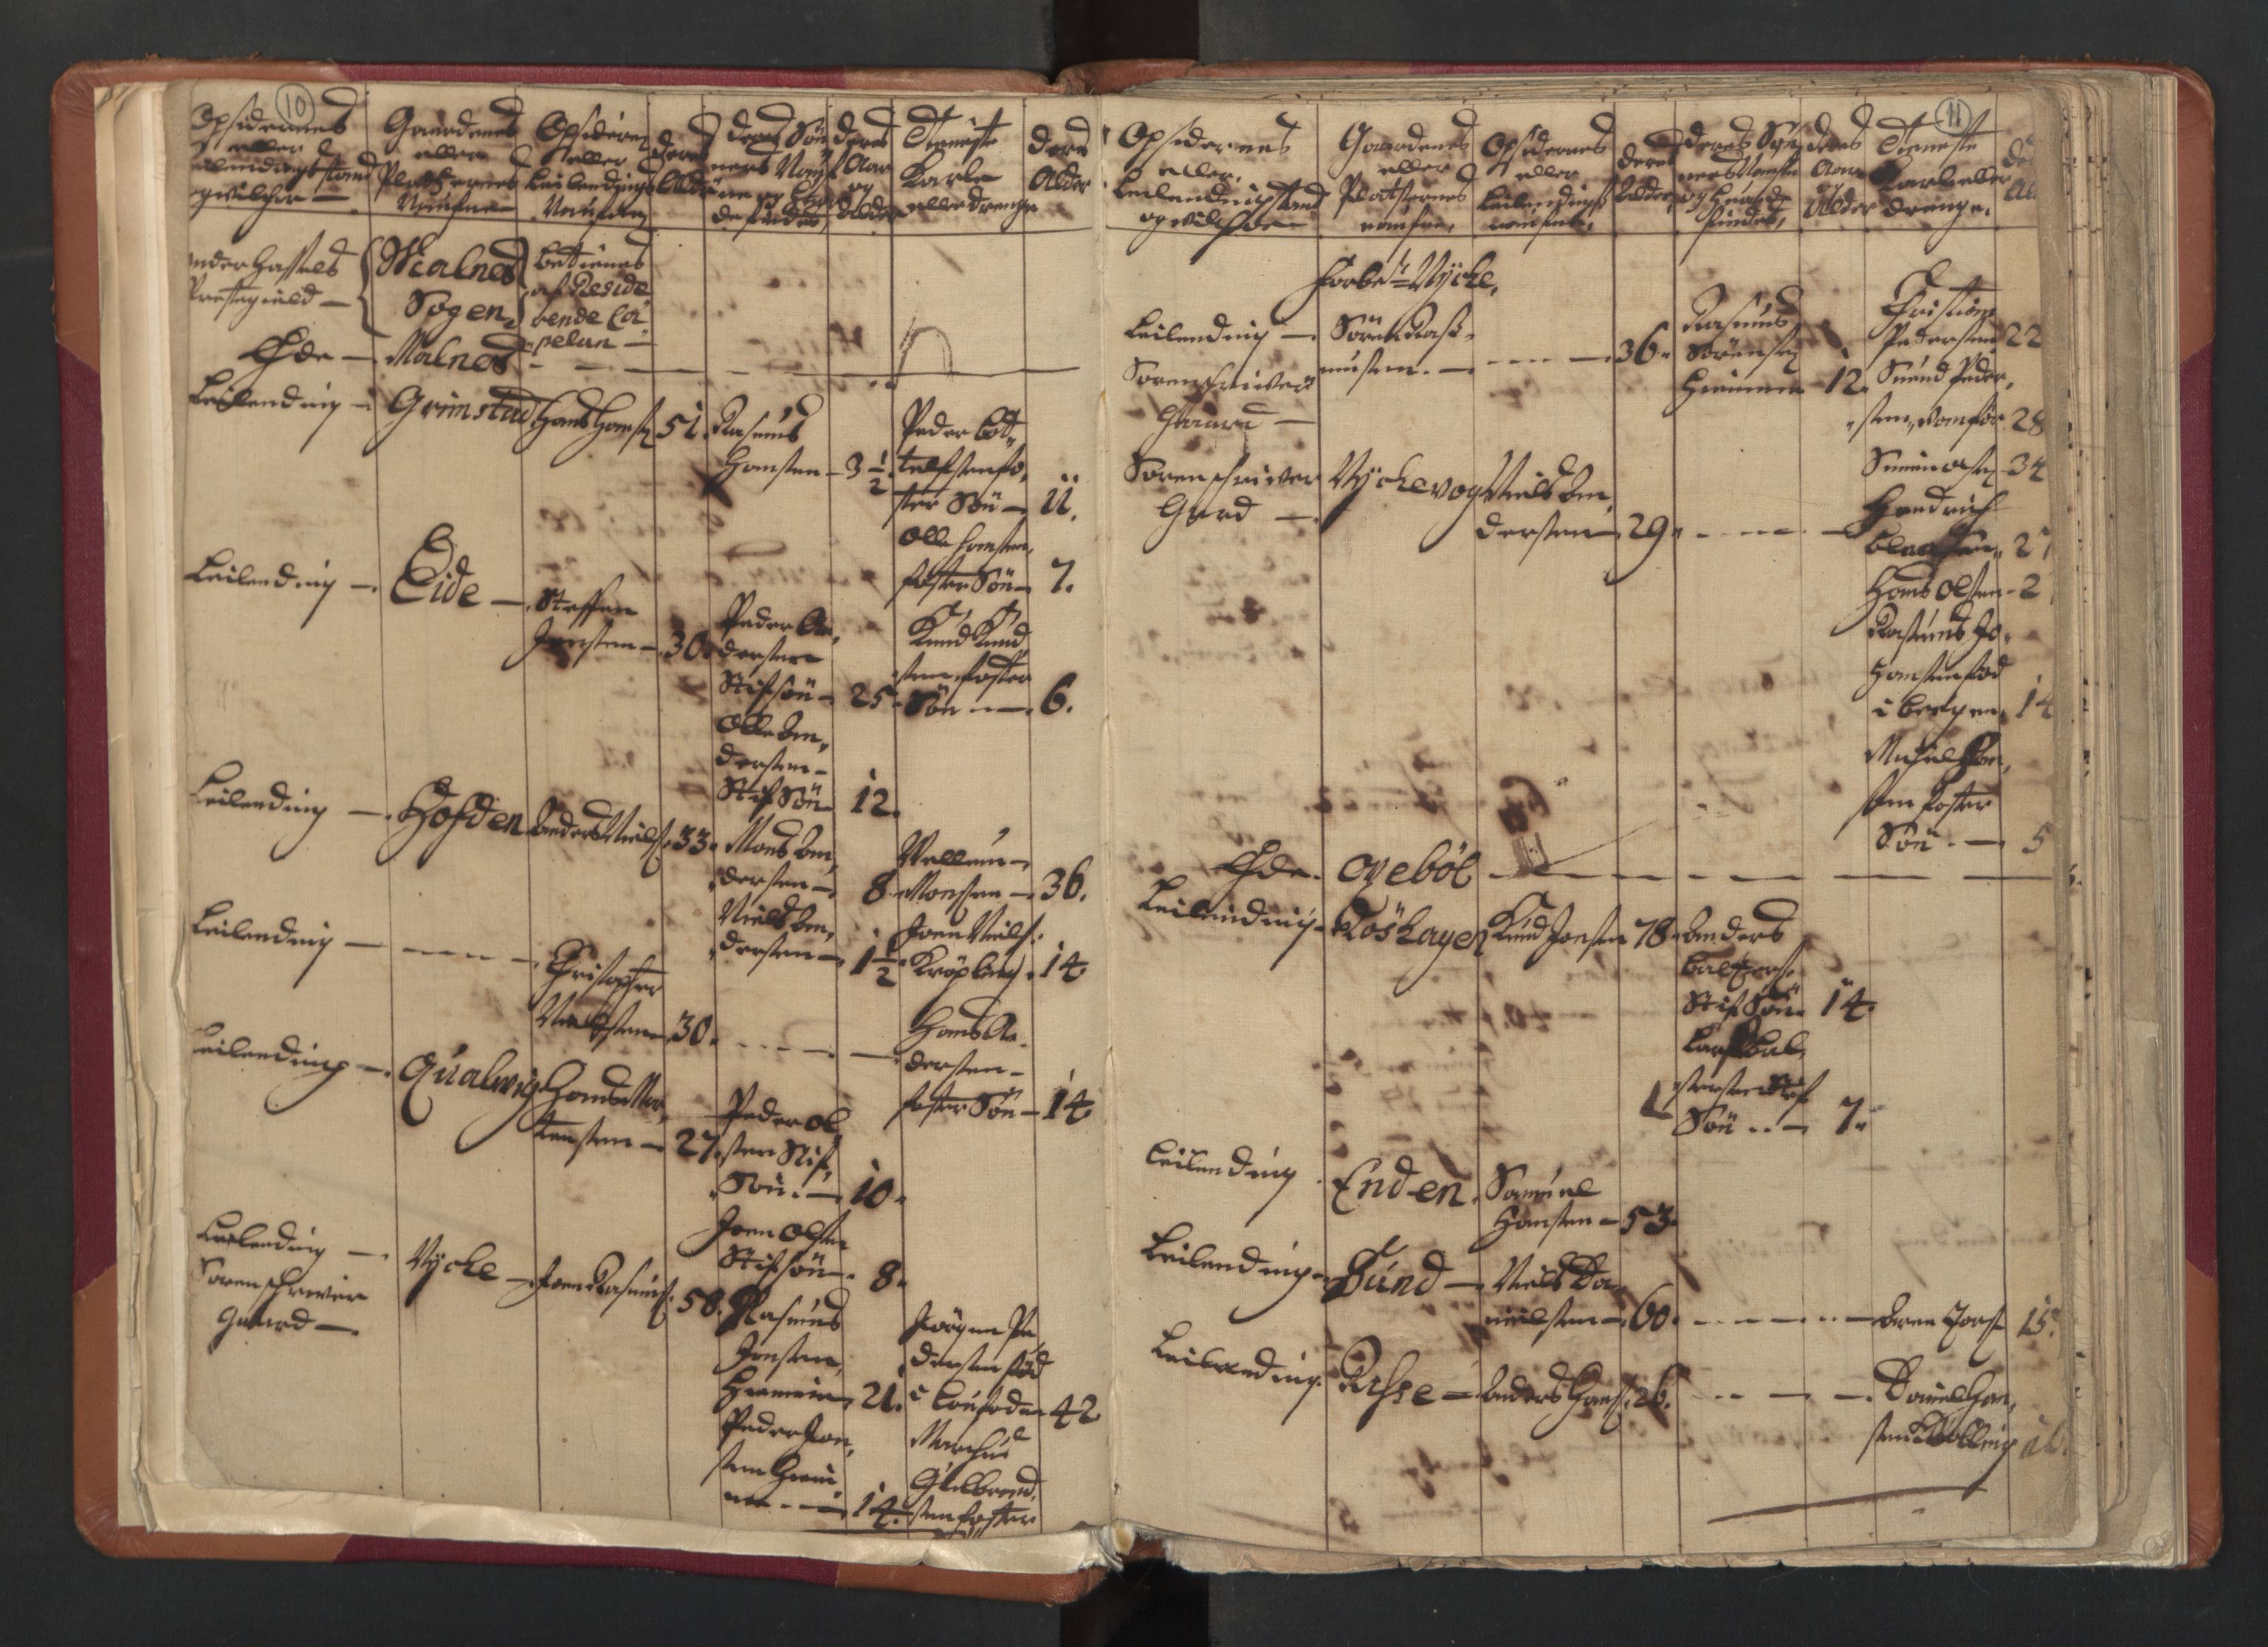 RA, Census (manntall) 1701, no. 18: Vesterålen, Andenes and Lofoten fogderi, 1701, p. 10-11